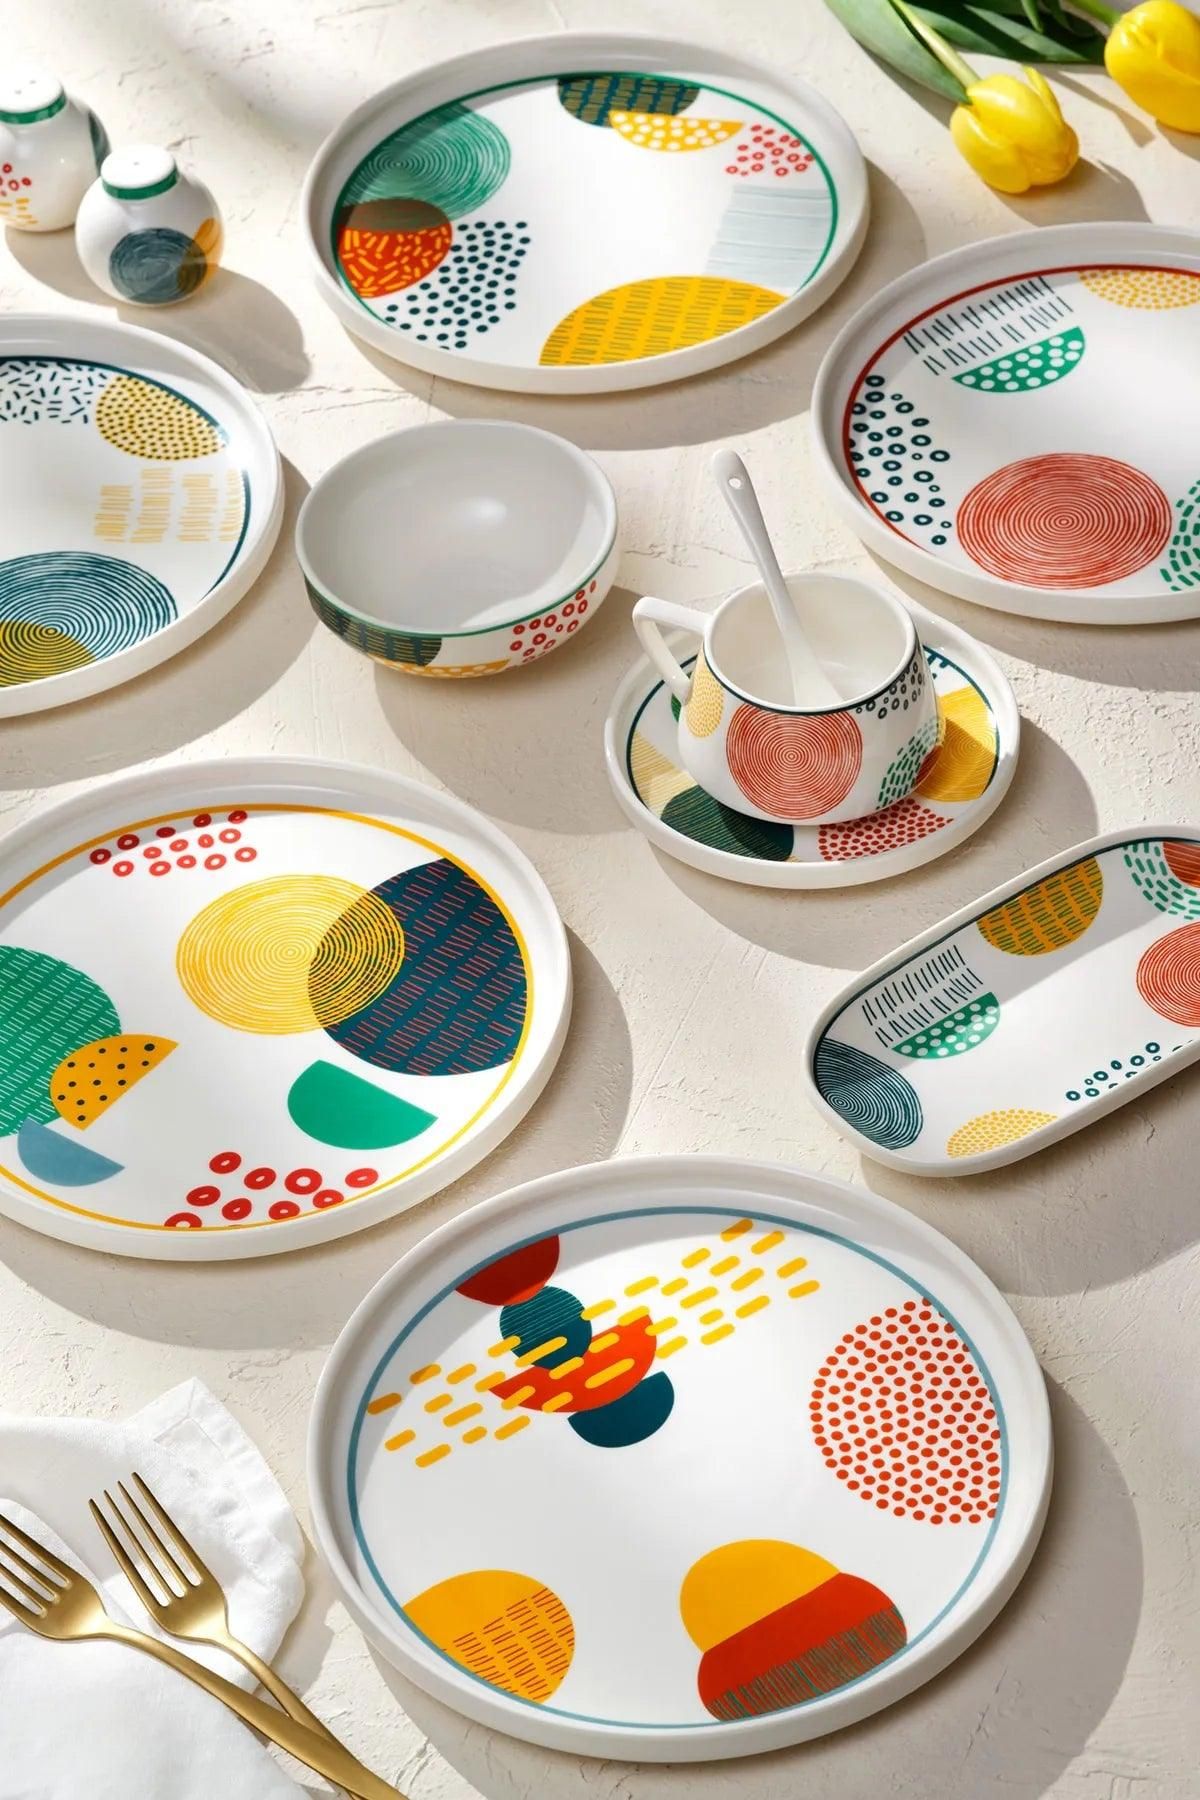 Emsan - Color mix porselen 32 parça 6 kişilik Kahvaltı / Servis takımı - evdeyiz.de